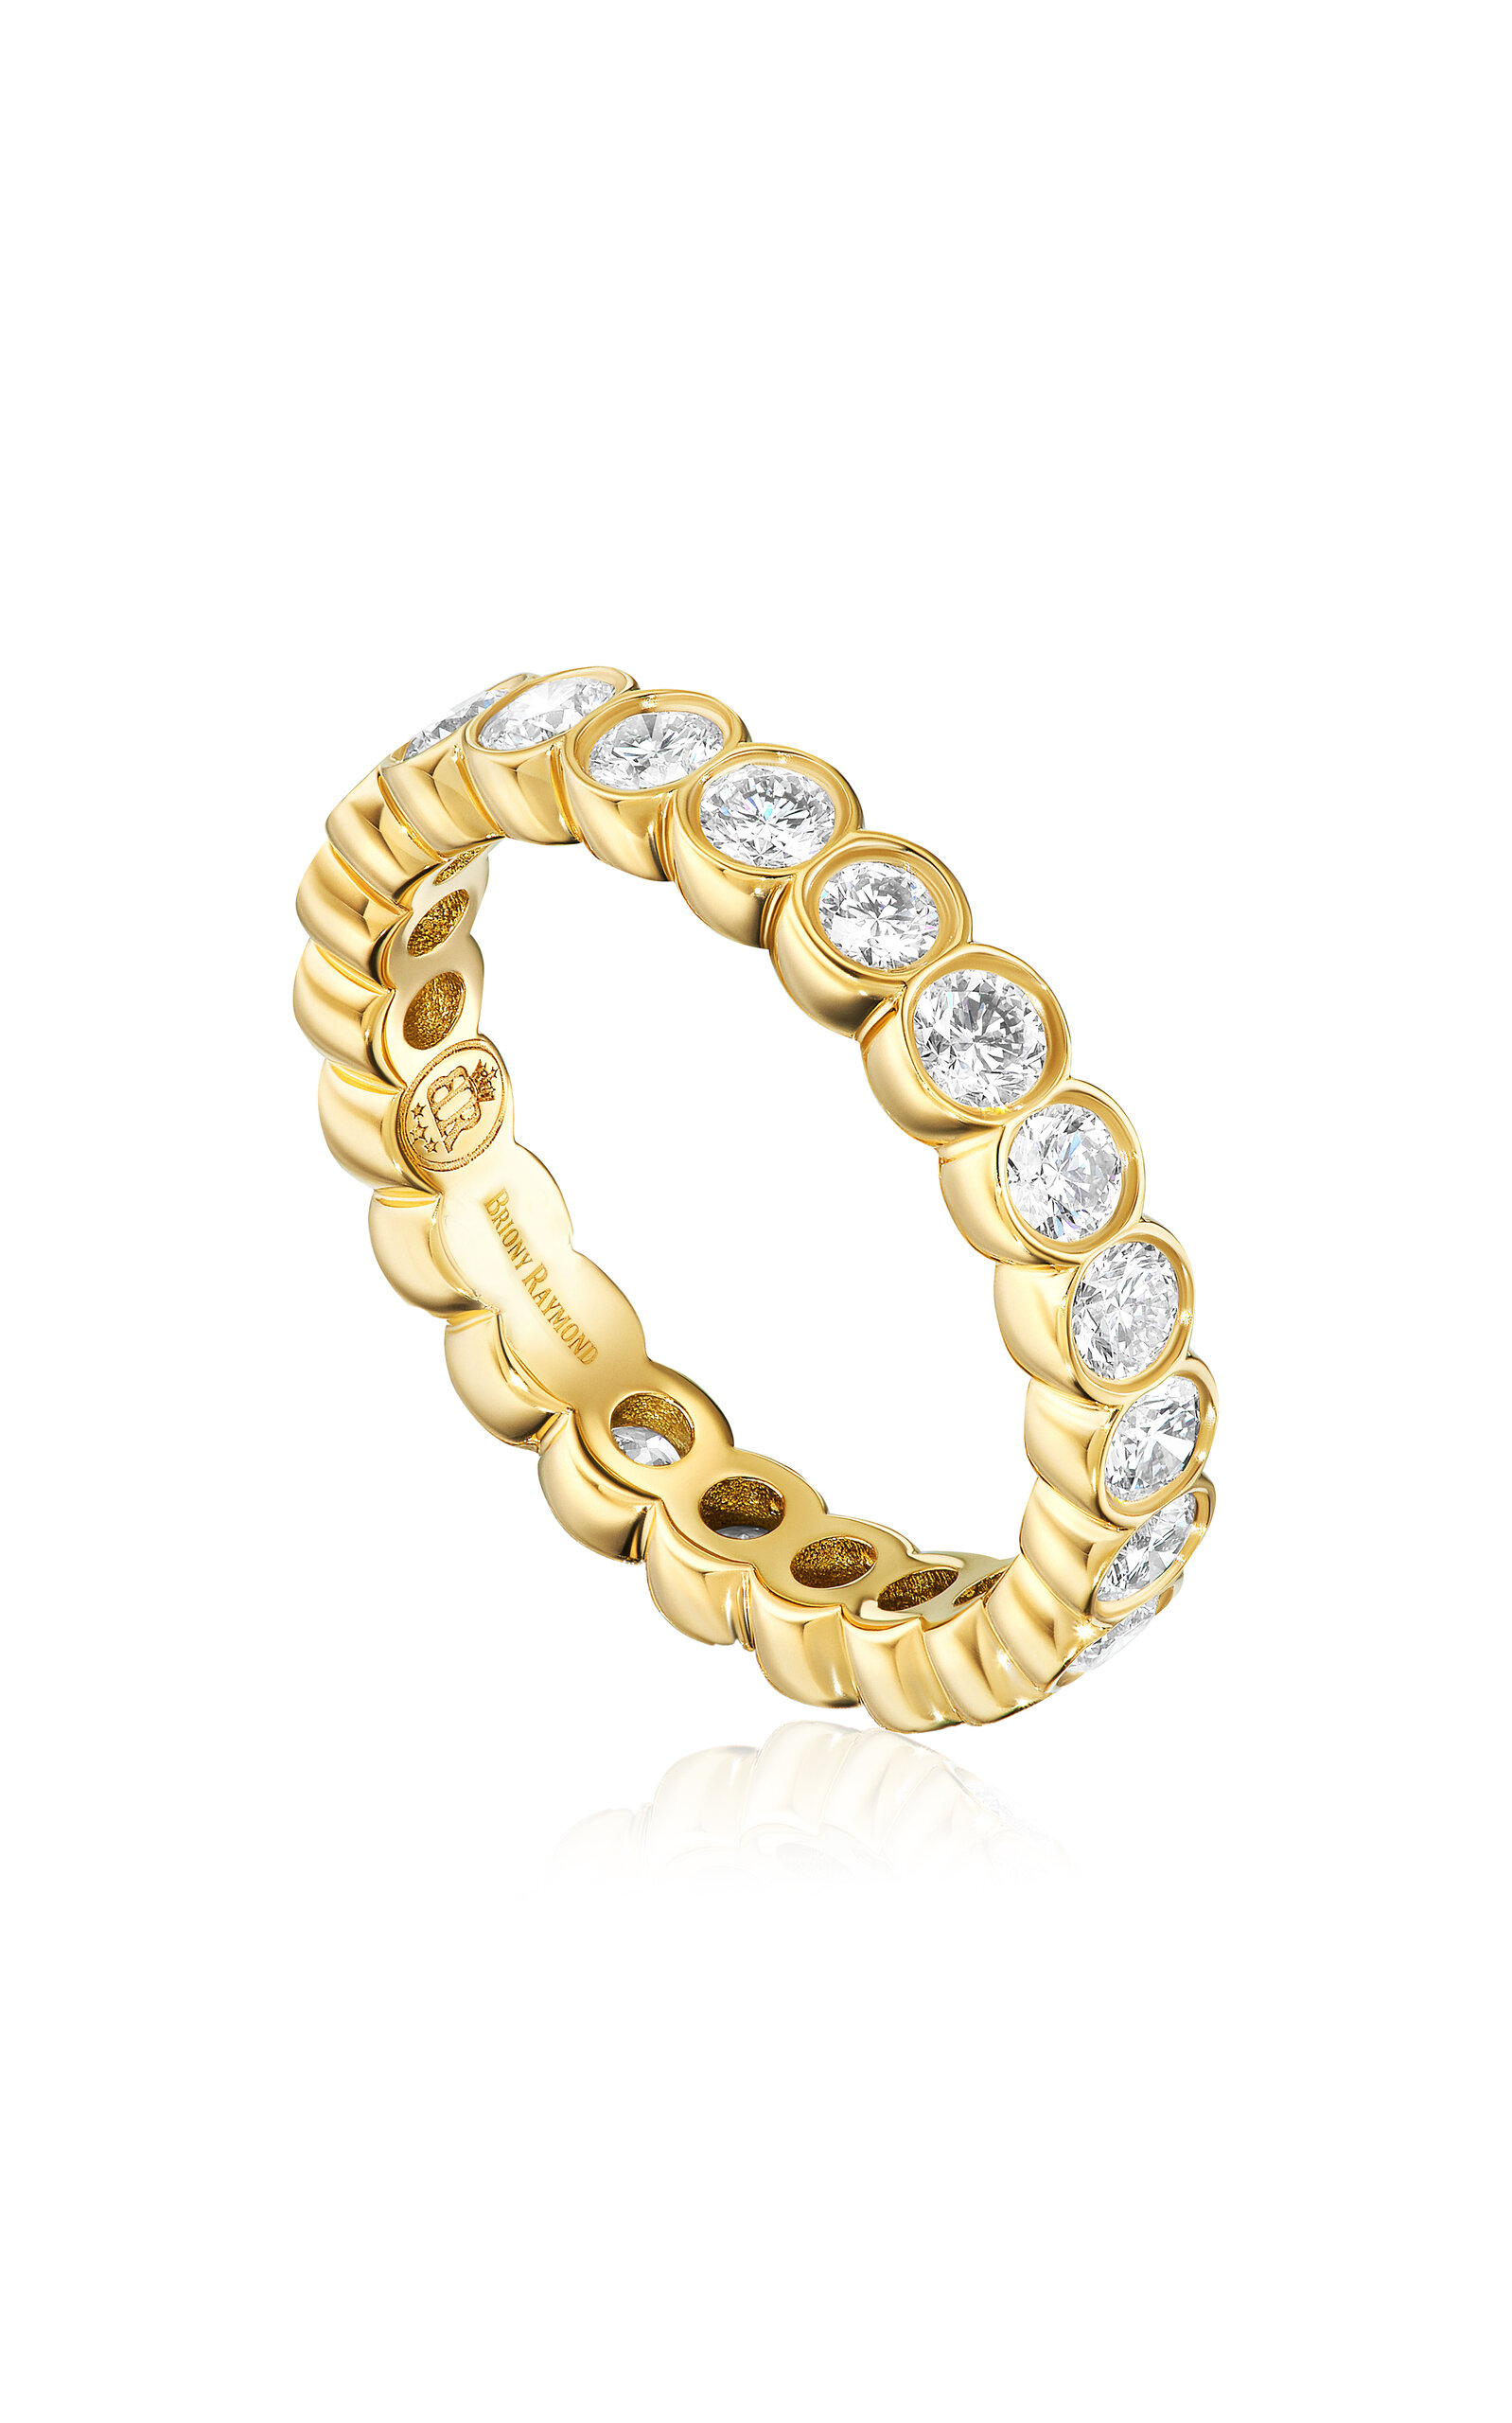 Briony Raymond Women's Aura 18K Yellow Gold Diamond Ring